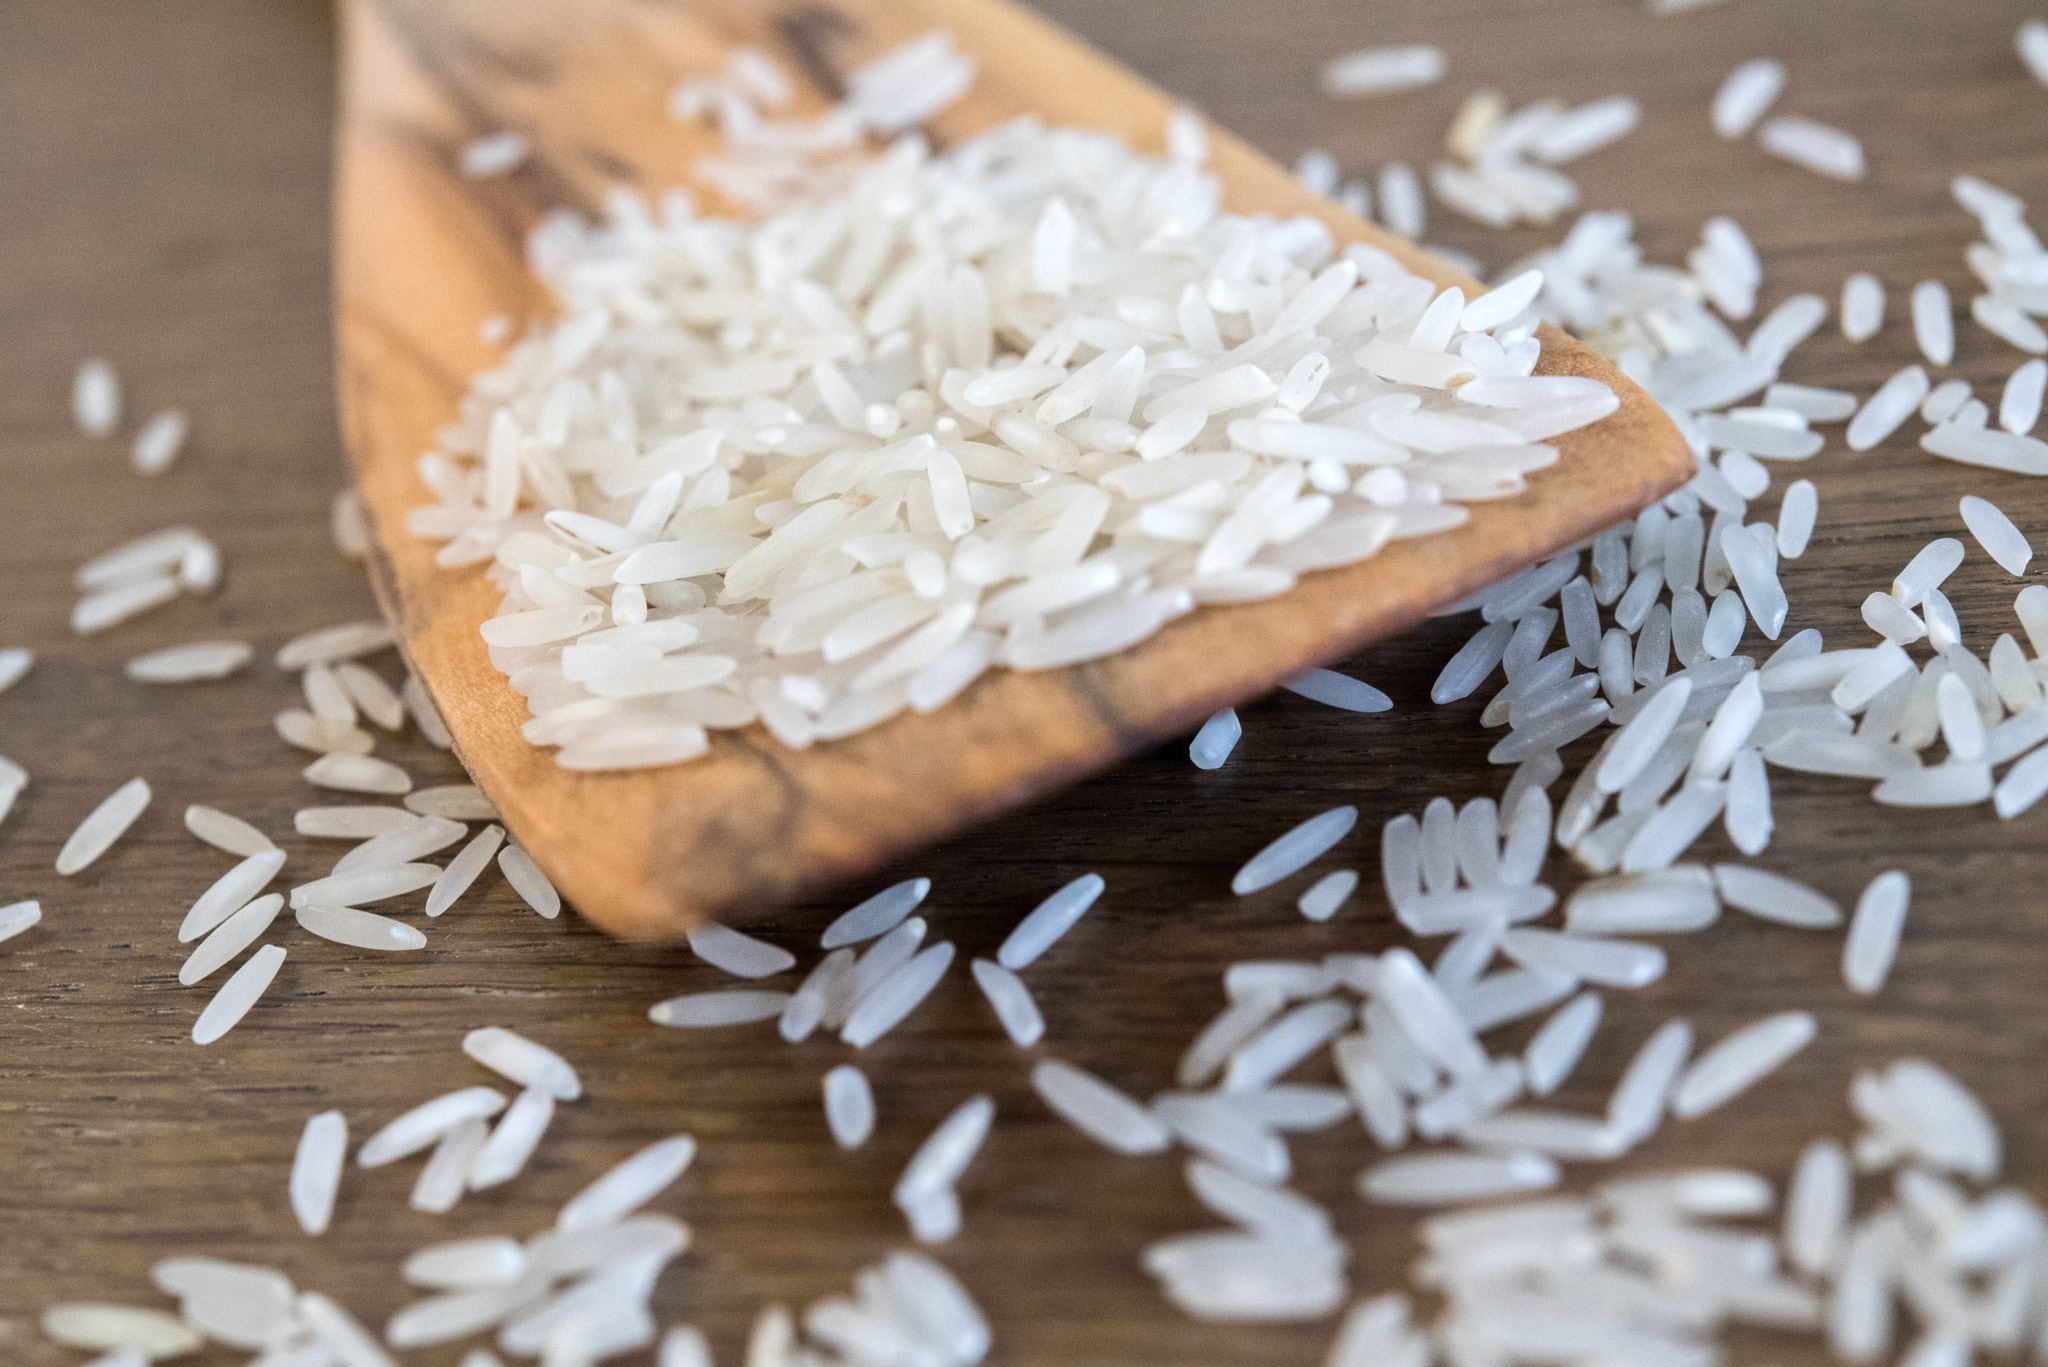 El arroz, aunque esencial en muchas dietas, ha sido identificado como un contribuyente potencial a condiciones de salud de riesgo como la obesidad
Foto: Andrea Warnecke/dpa